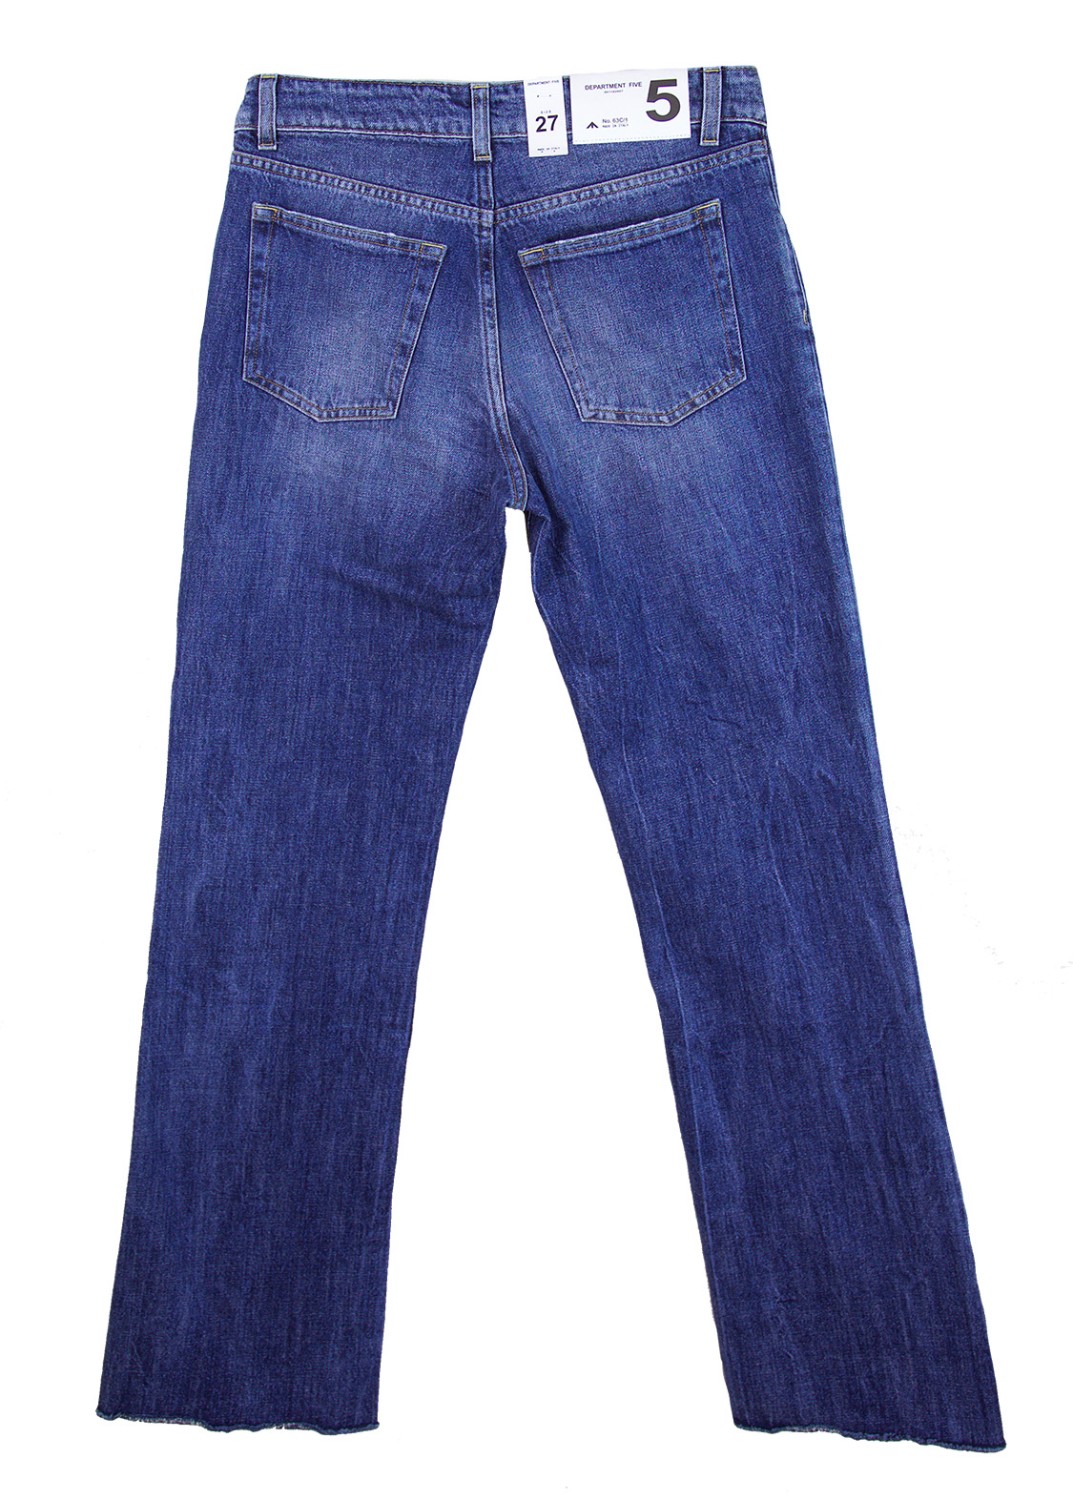 shop Department 5 Sales Pantaloni: Pantalone jeans Department 5, modello stretto con zampa d'elefante, quattro tasche, vita regolare.

Composizione: 100% cotone. number 961